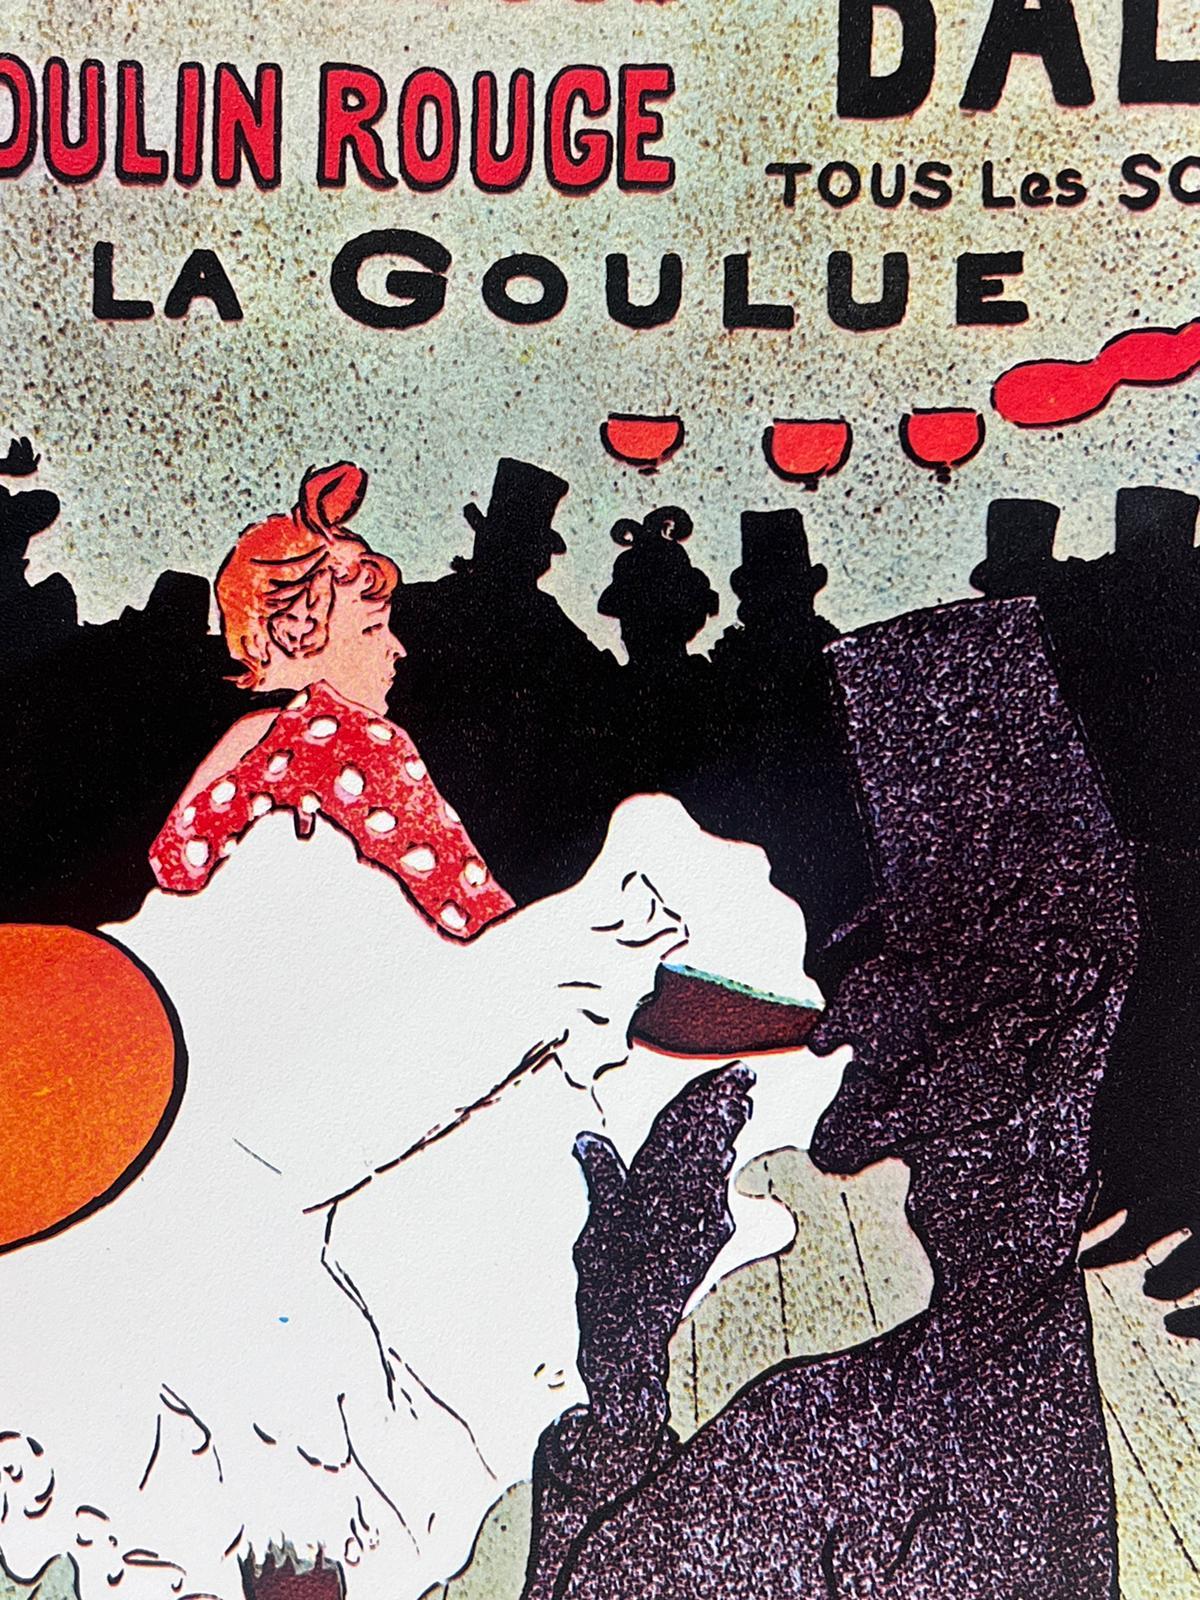 Moulin Rouge Paris Vintage French Color Poster after Henri Toulouse-Lautrec - Print by Henri de Toulouse-Lautrec